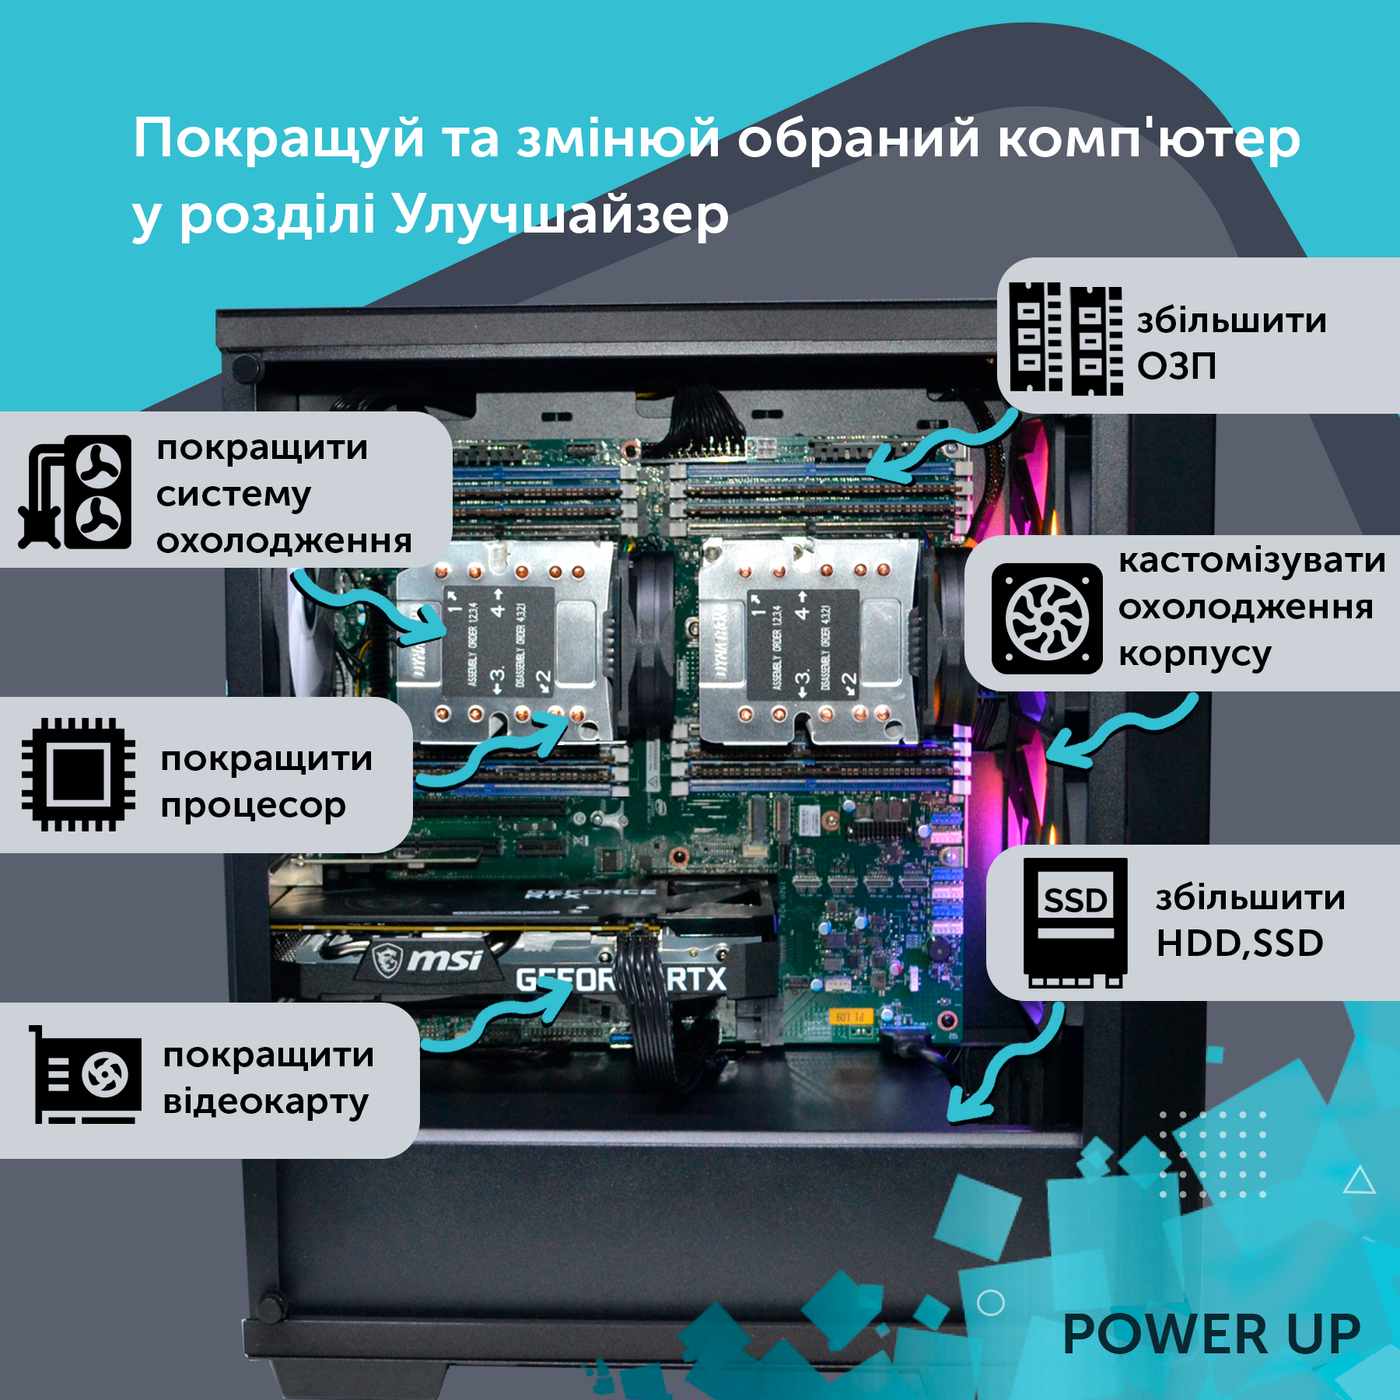 Робоча станція PowerUp Desktop #270 Ryzen 9 7900x/32 GB/SSD 1TB/GeForce RTX 4060Ti 8GB